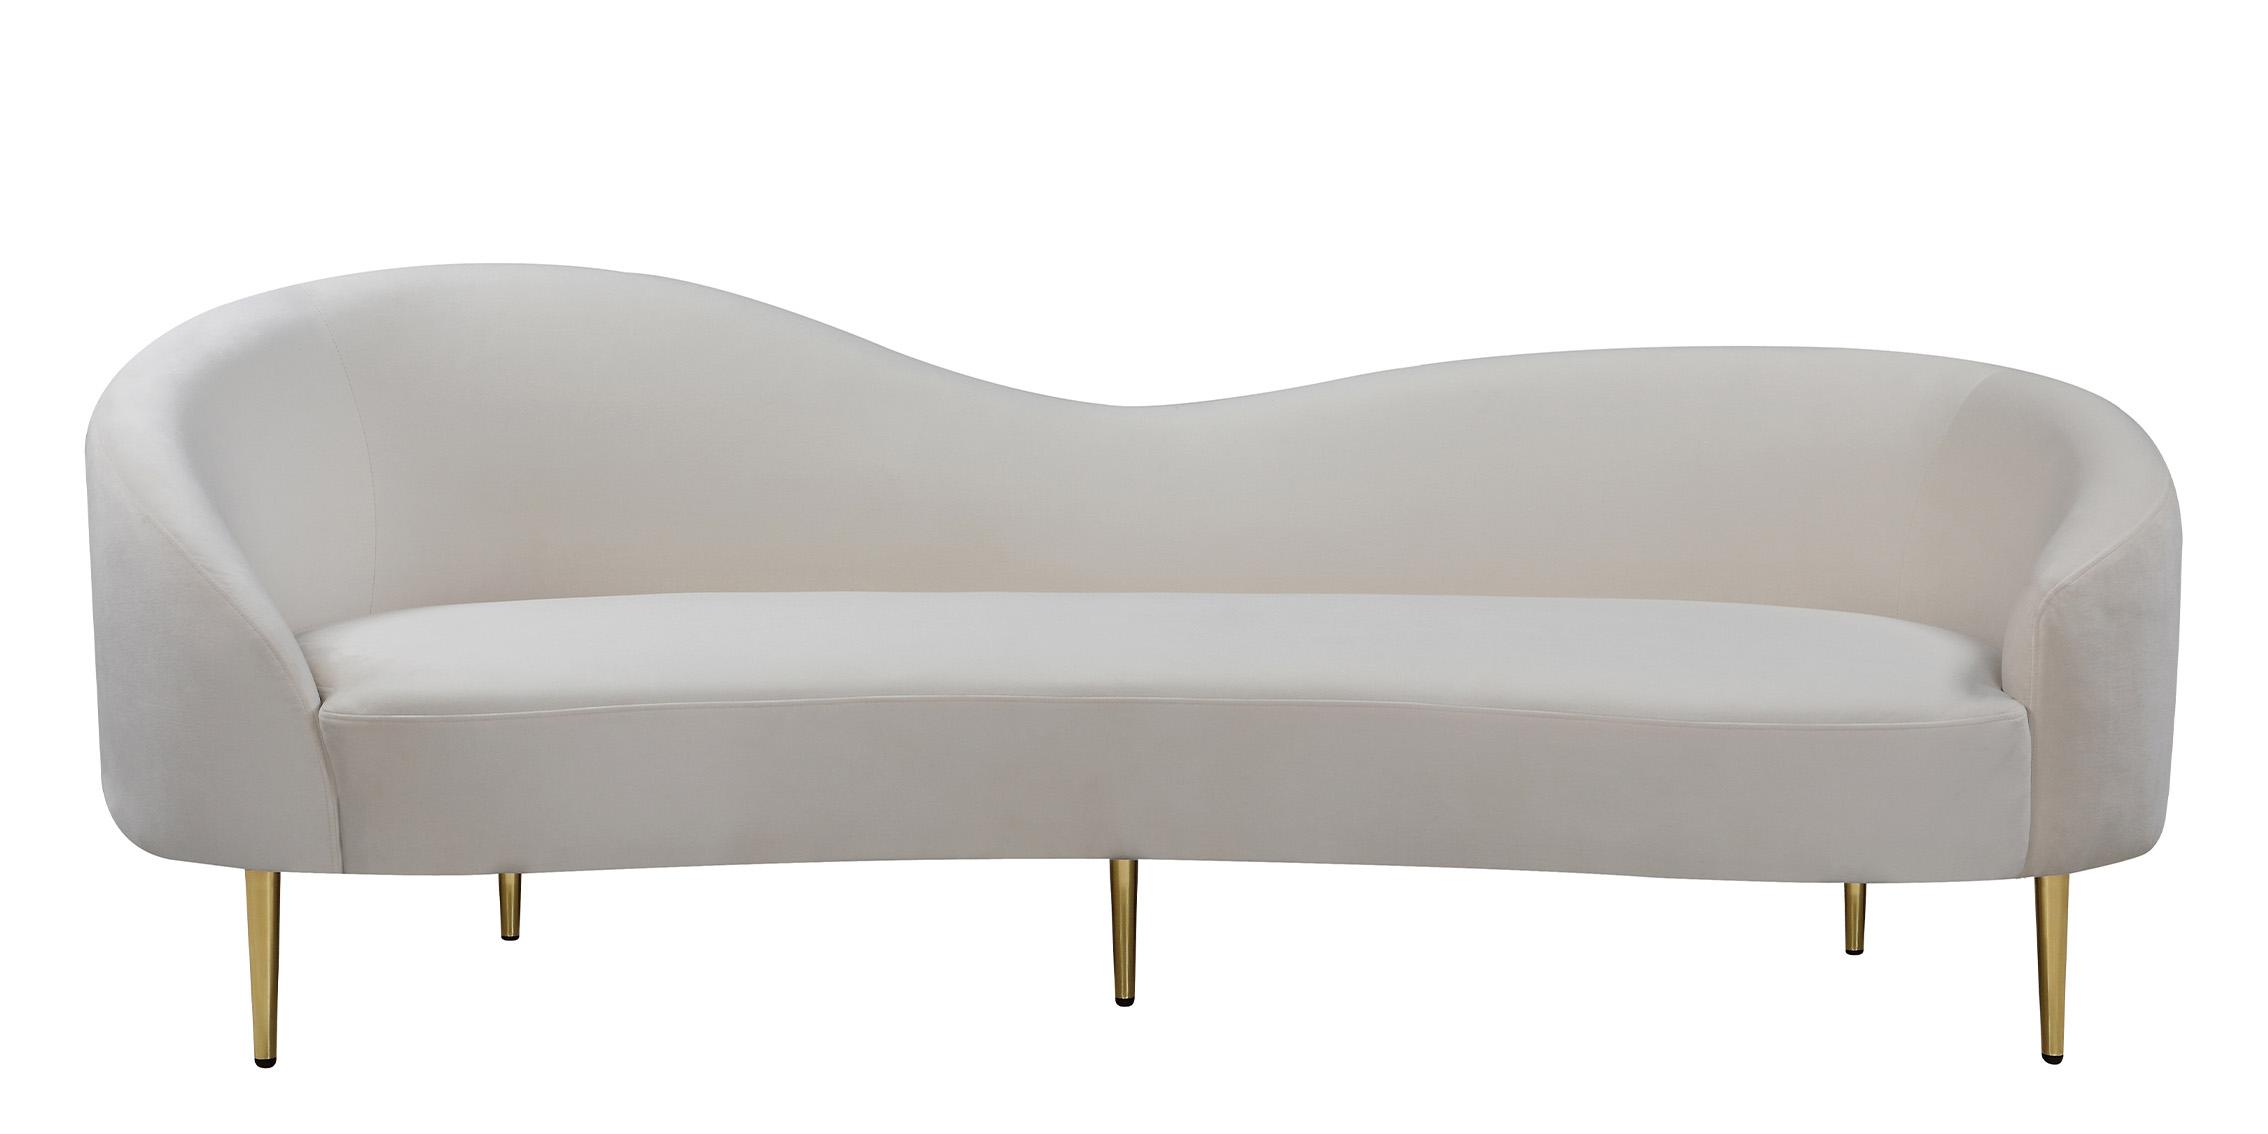 

    
Meridian Furniture RITZ 659Cream-S Sofa Chrome/Cream/Gold 659Cream-S
